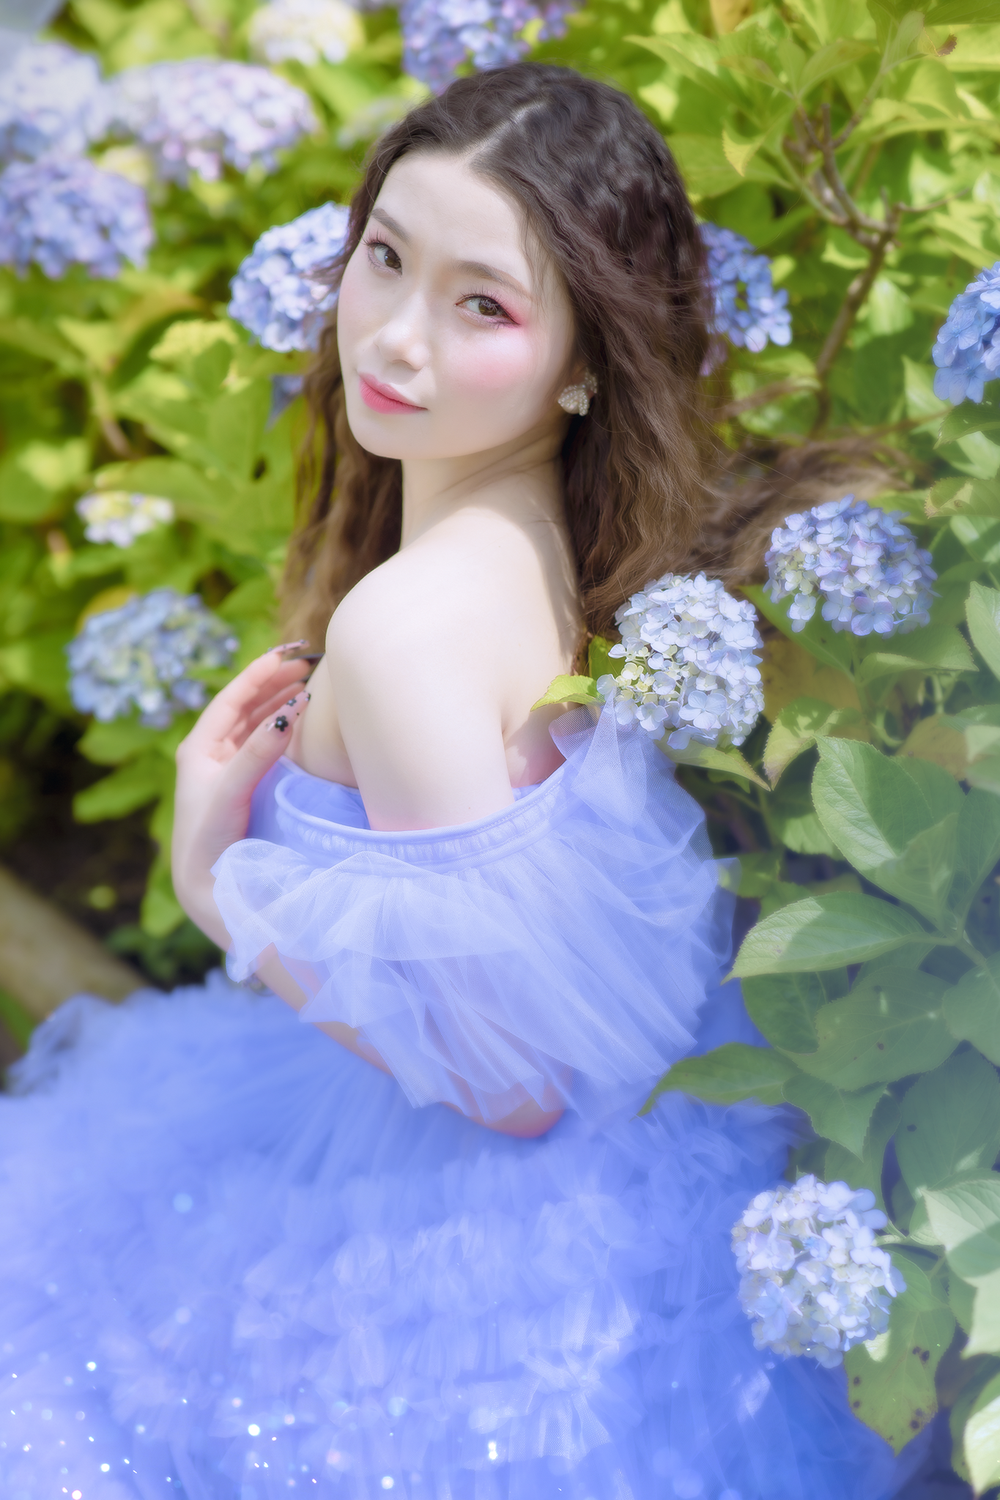 Ngắm bộ ảnh đẹp của cô nàng du học sinh Nhật Bản và nghe tâm sự về cuộc sống không chỉ có màu hồng - Ảnh 2.